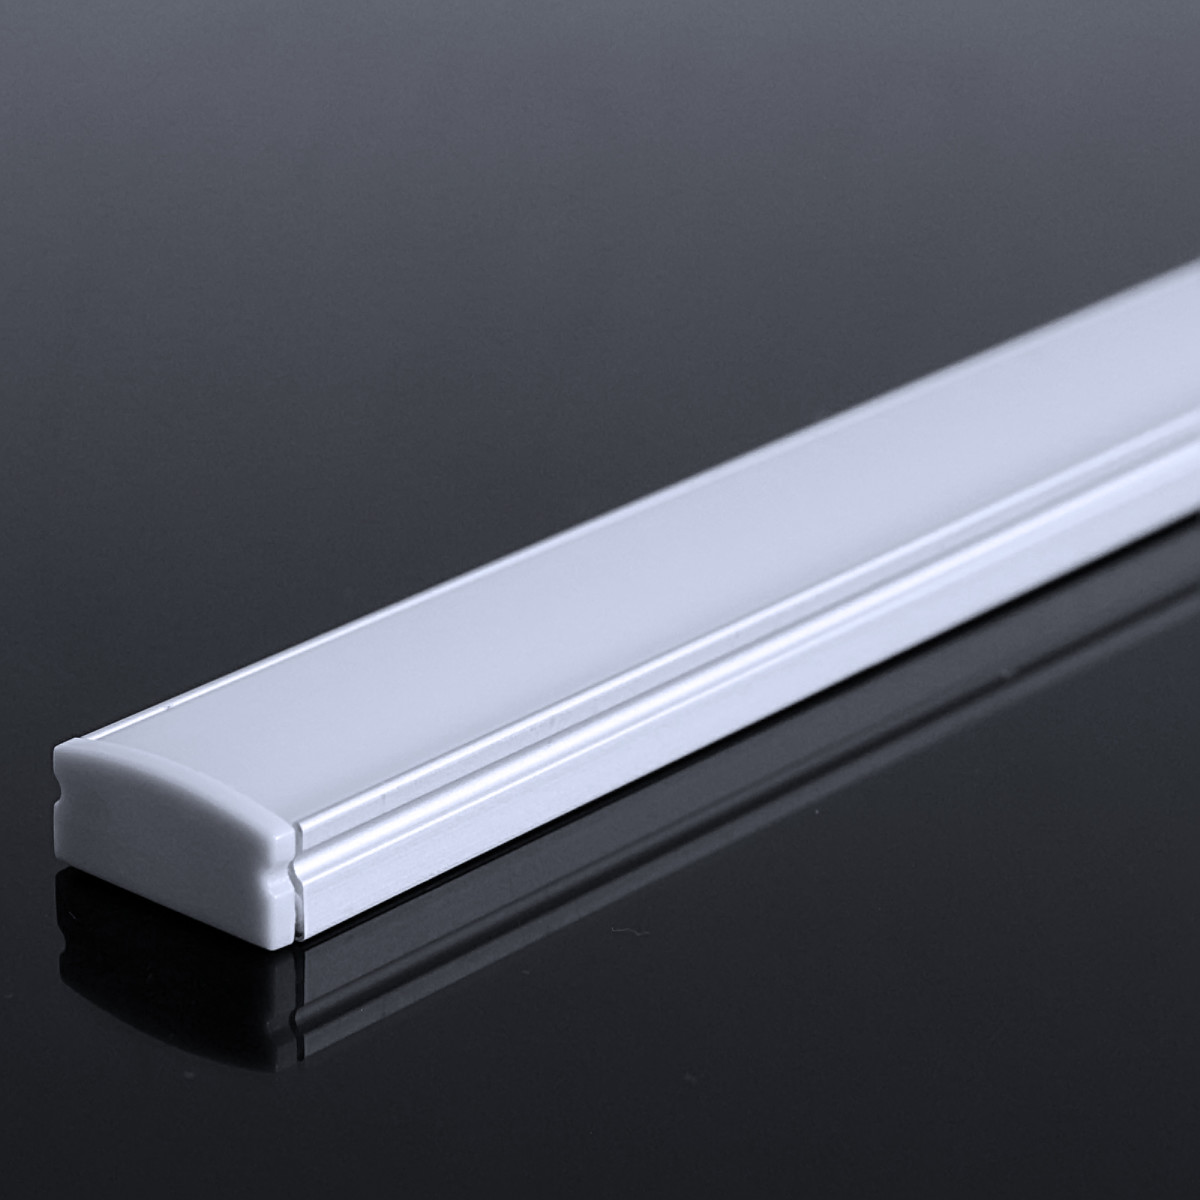 LED Flachprofil "Slim-Line" | Abdeckung diffus | Zuschnitt auf 187cm |